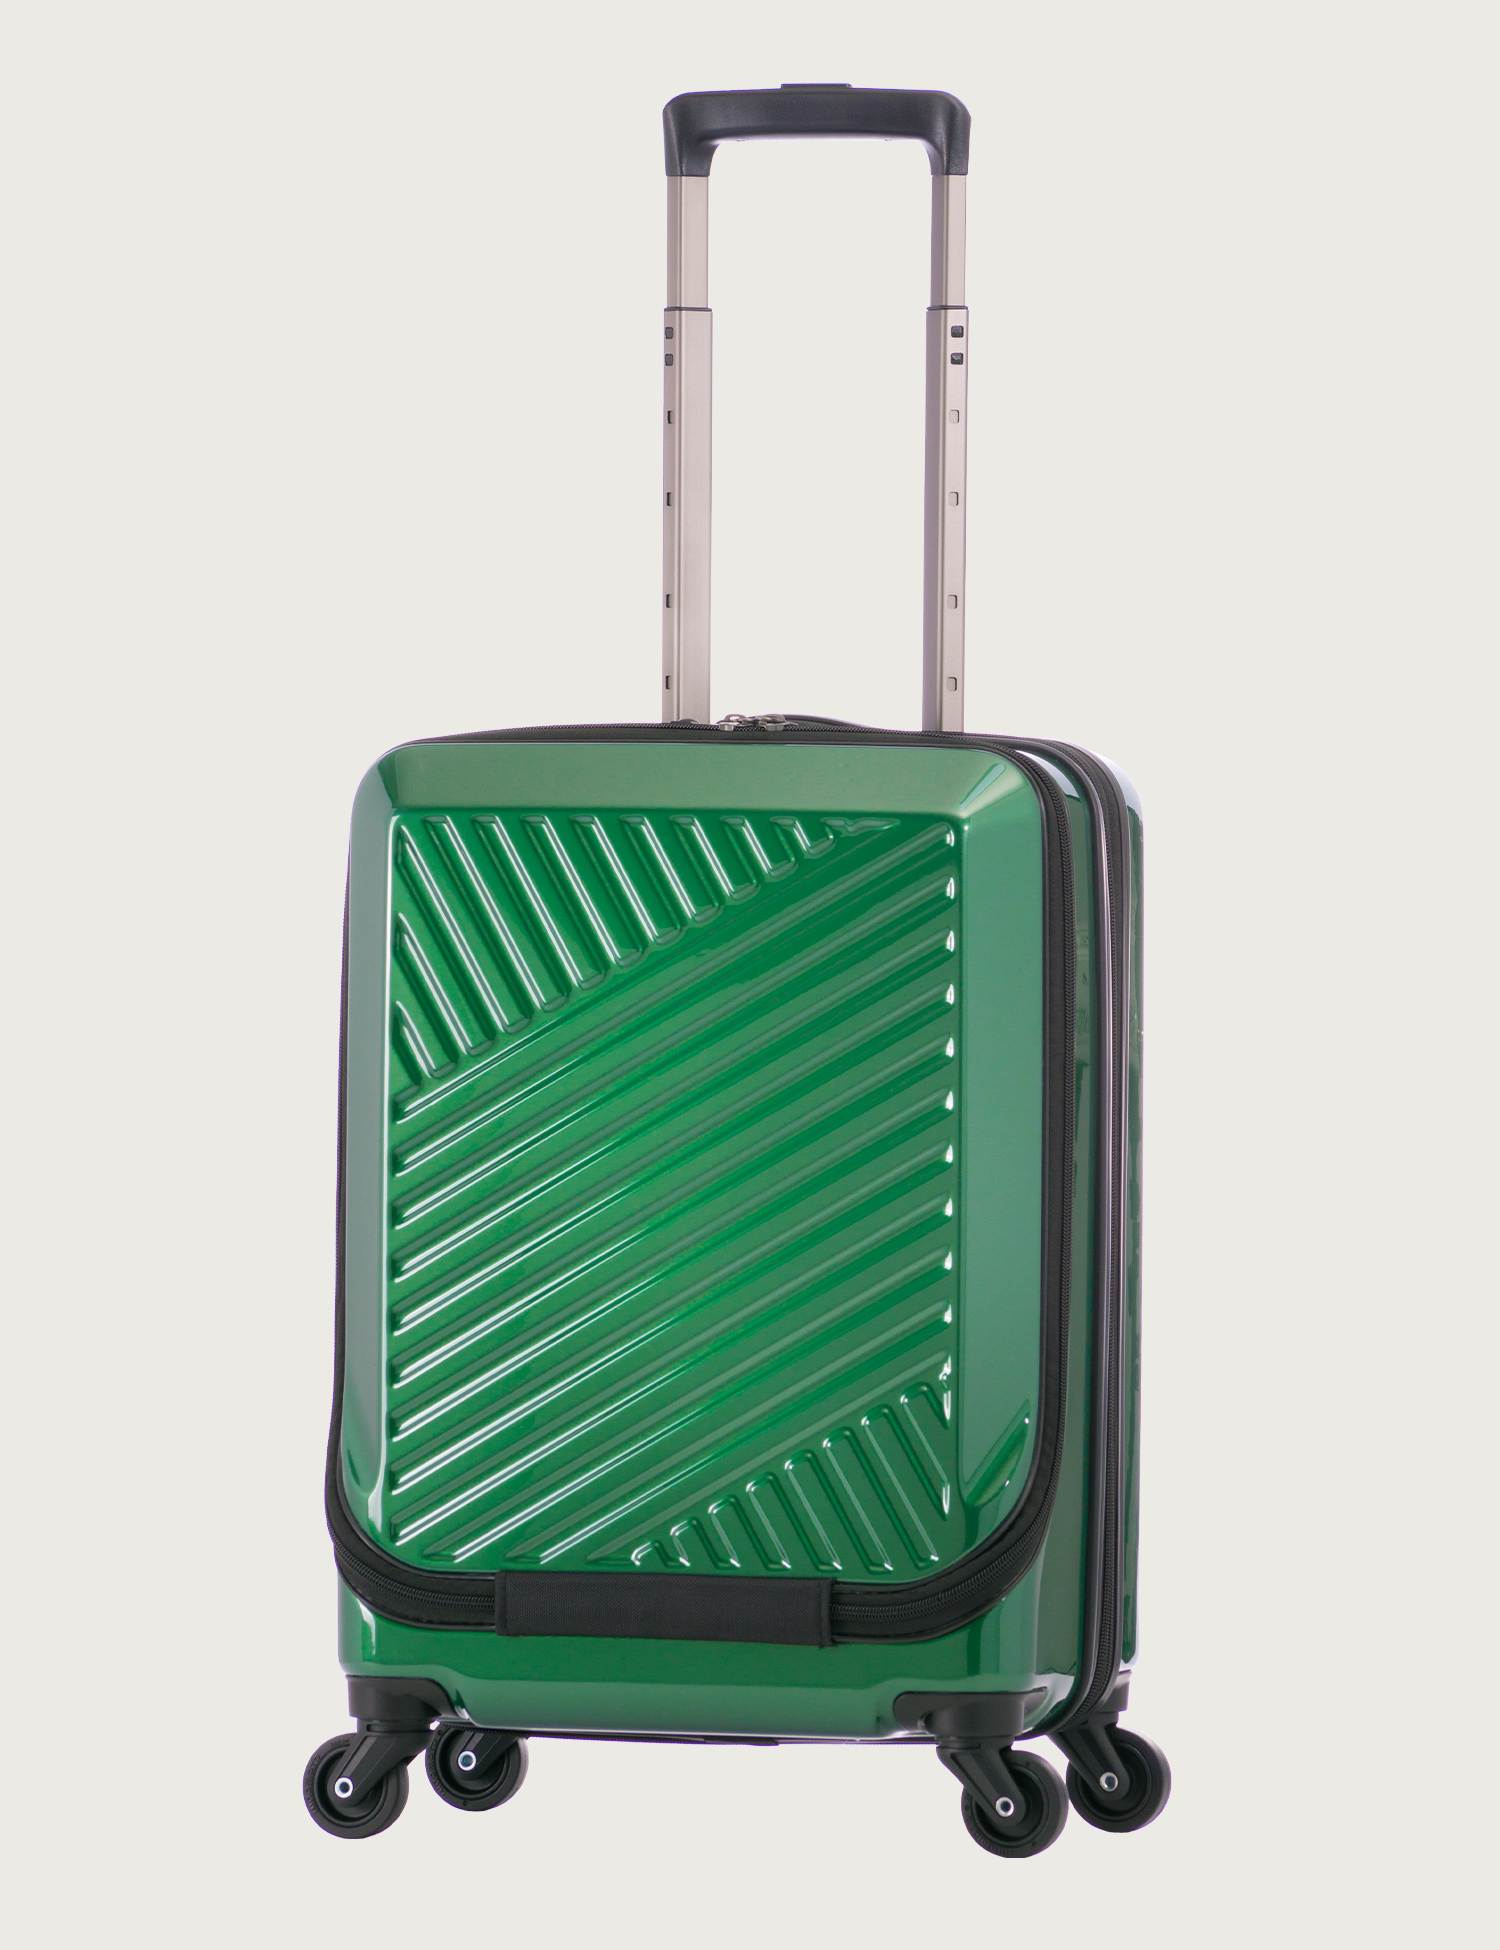 その他【色: Gray】[Bargiotti] フロントオープン スーツケース拡張機能